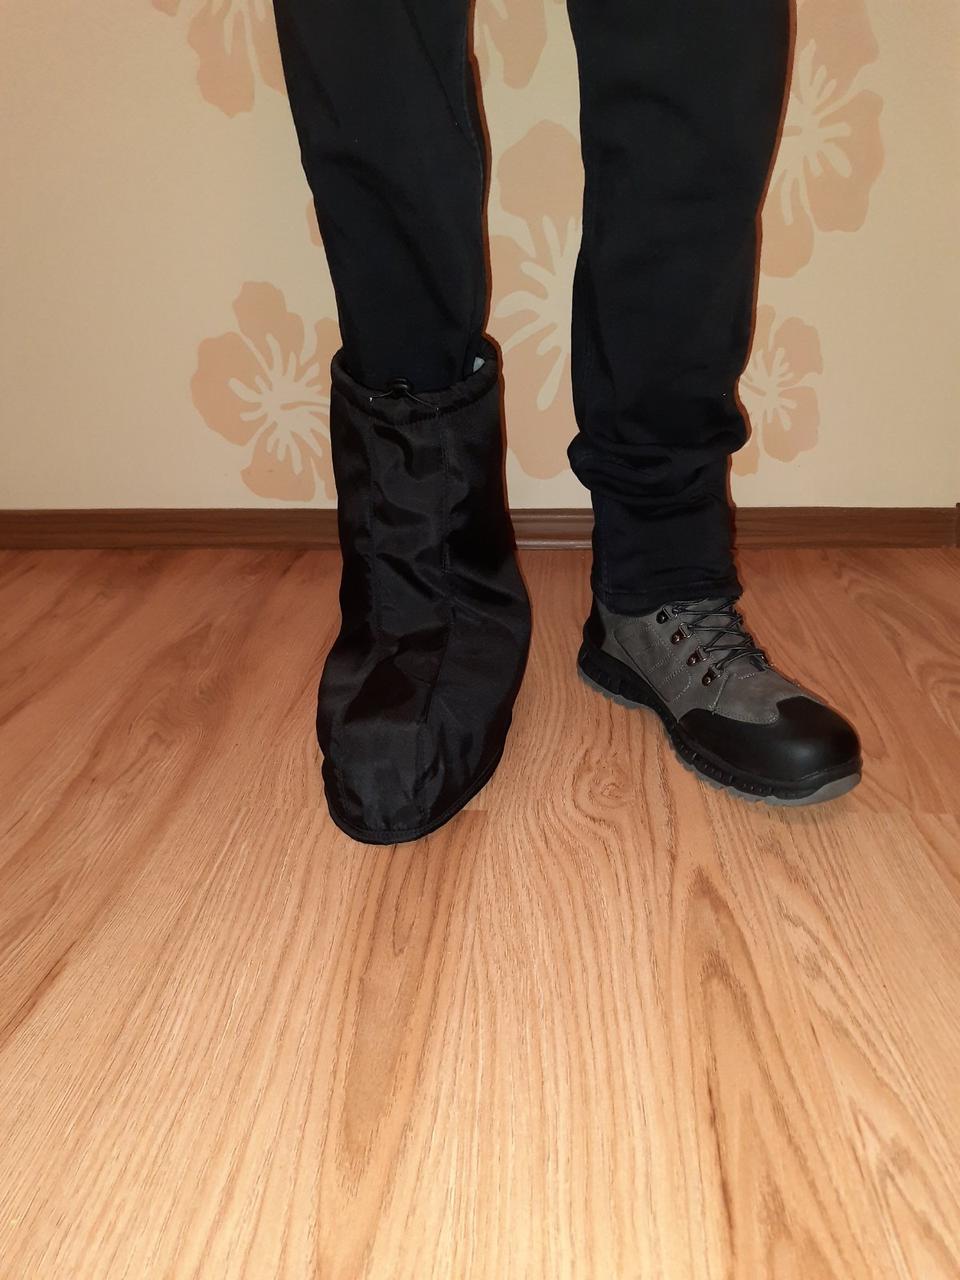 Теплий чохол для гіпсу, шини на нозі, універсальний, непромокальна плащівка (чорний) чоловічий